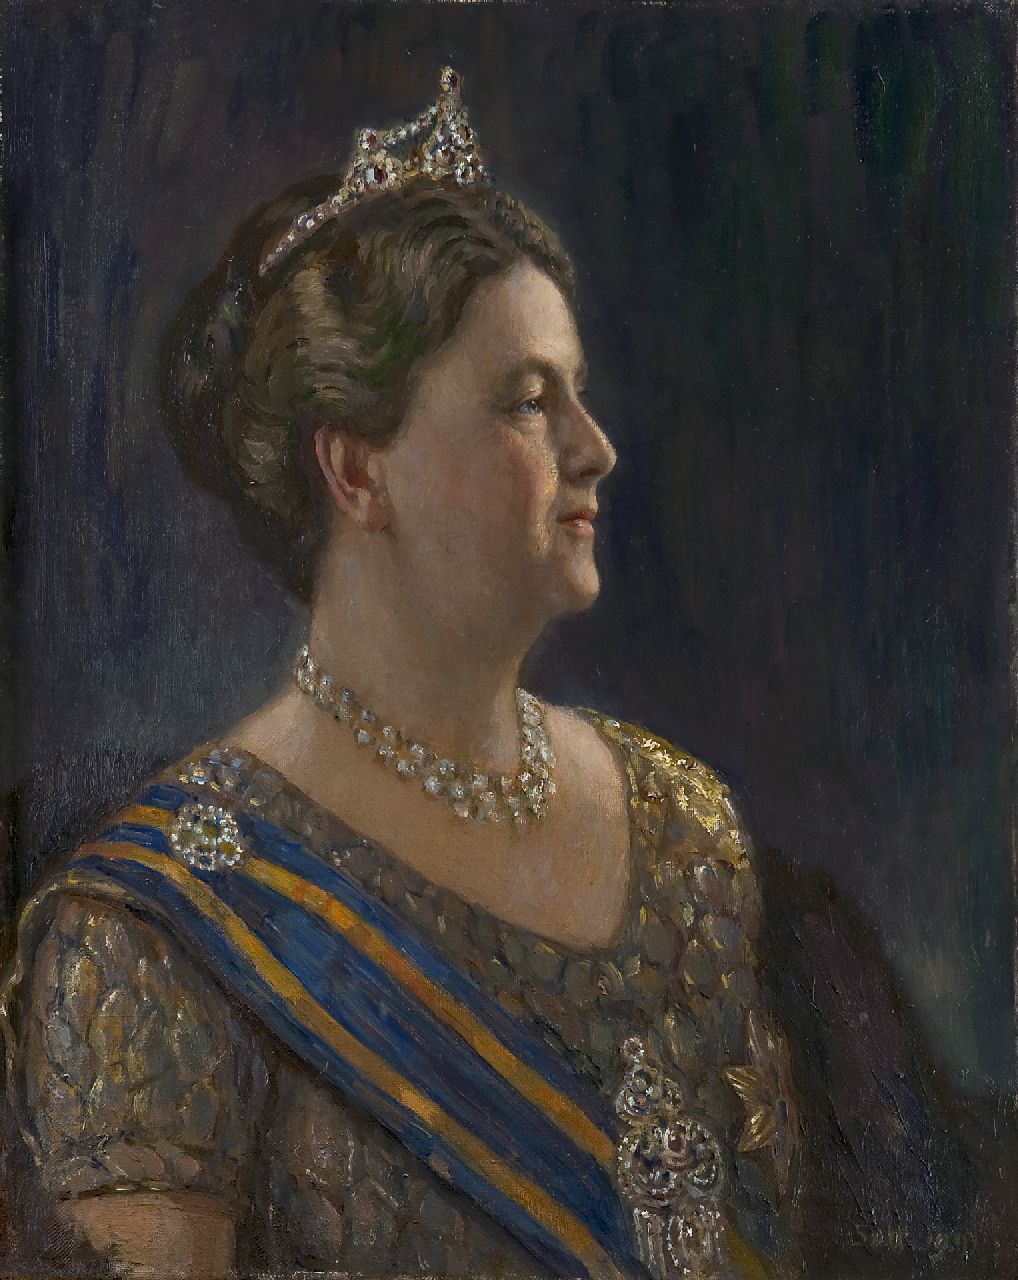 Heer S. de | Simon de Heer, Portret van koningin Wilhelmina, olieverf op doek 68,3 x 54,5 cm, gesigneerd rechtsonder met initialen SdH en gedateerd 1941